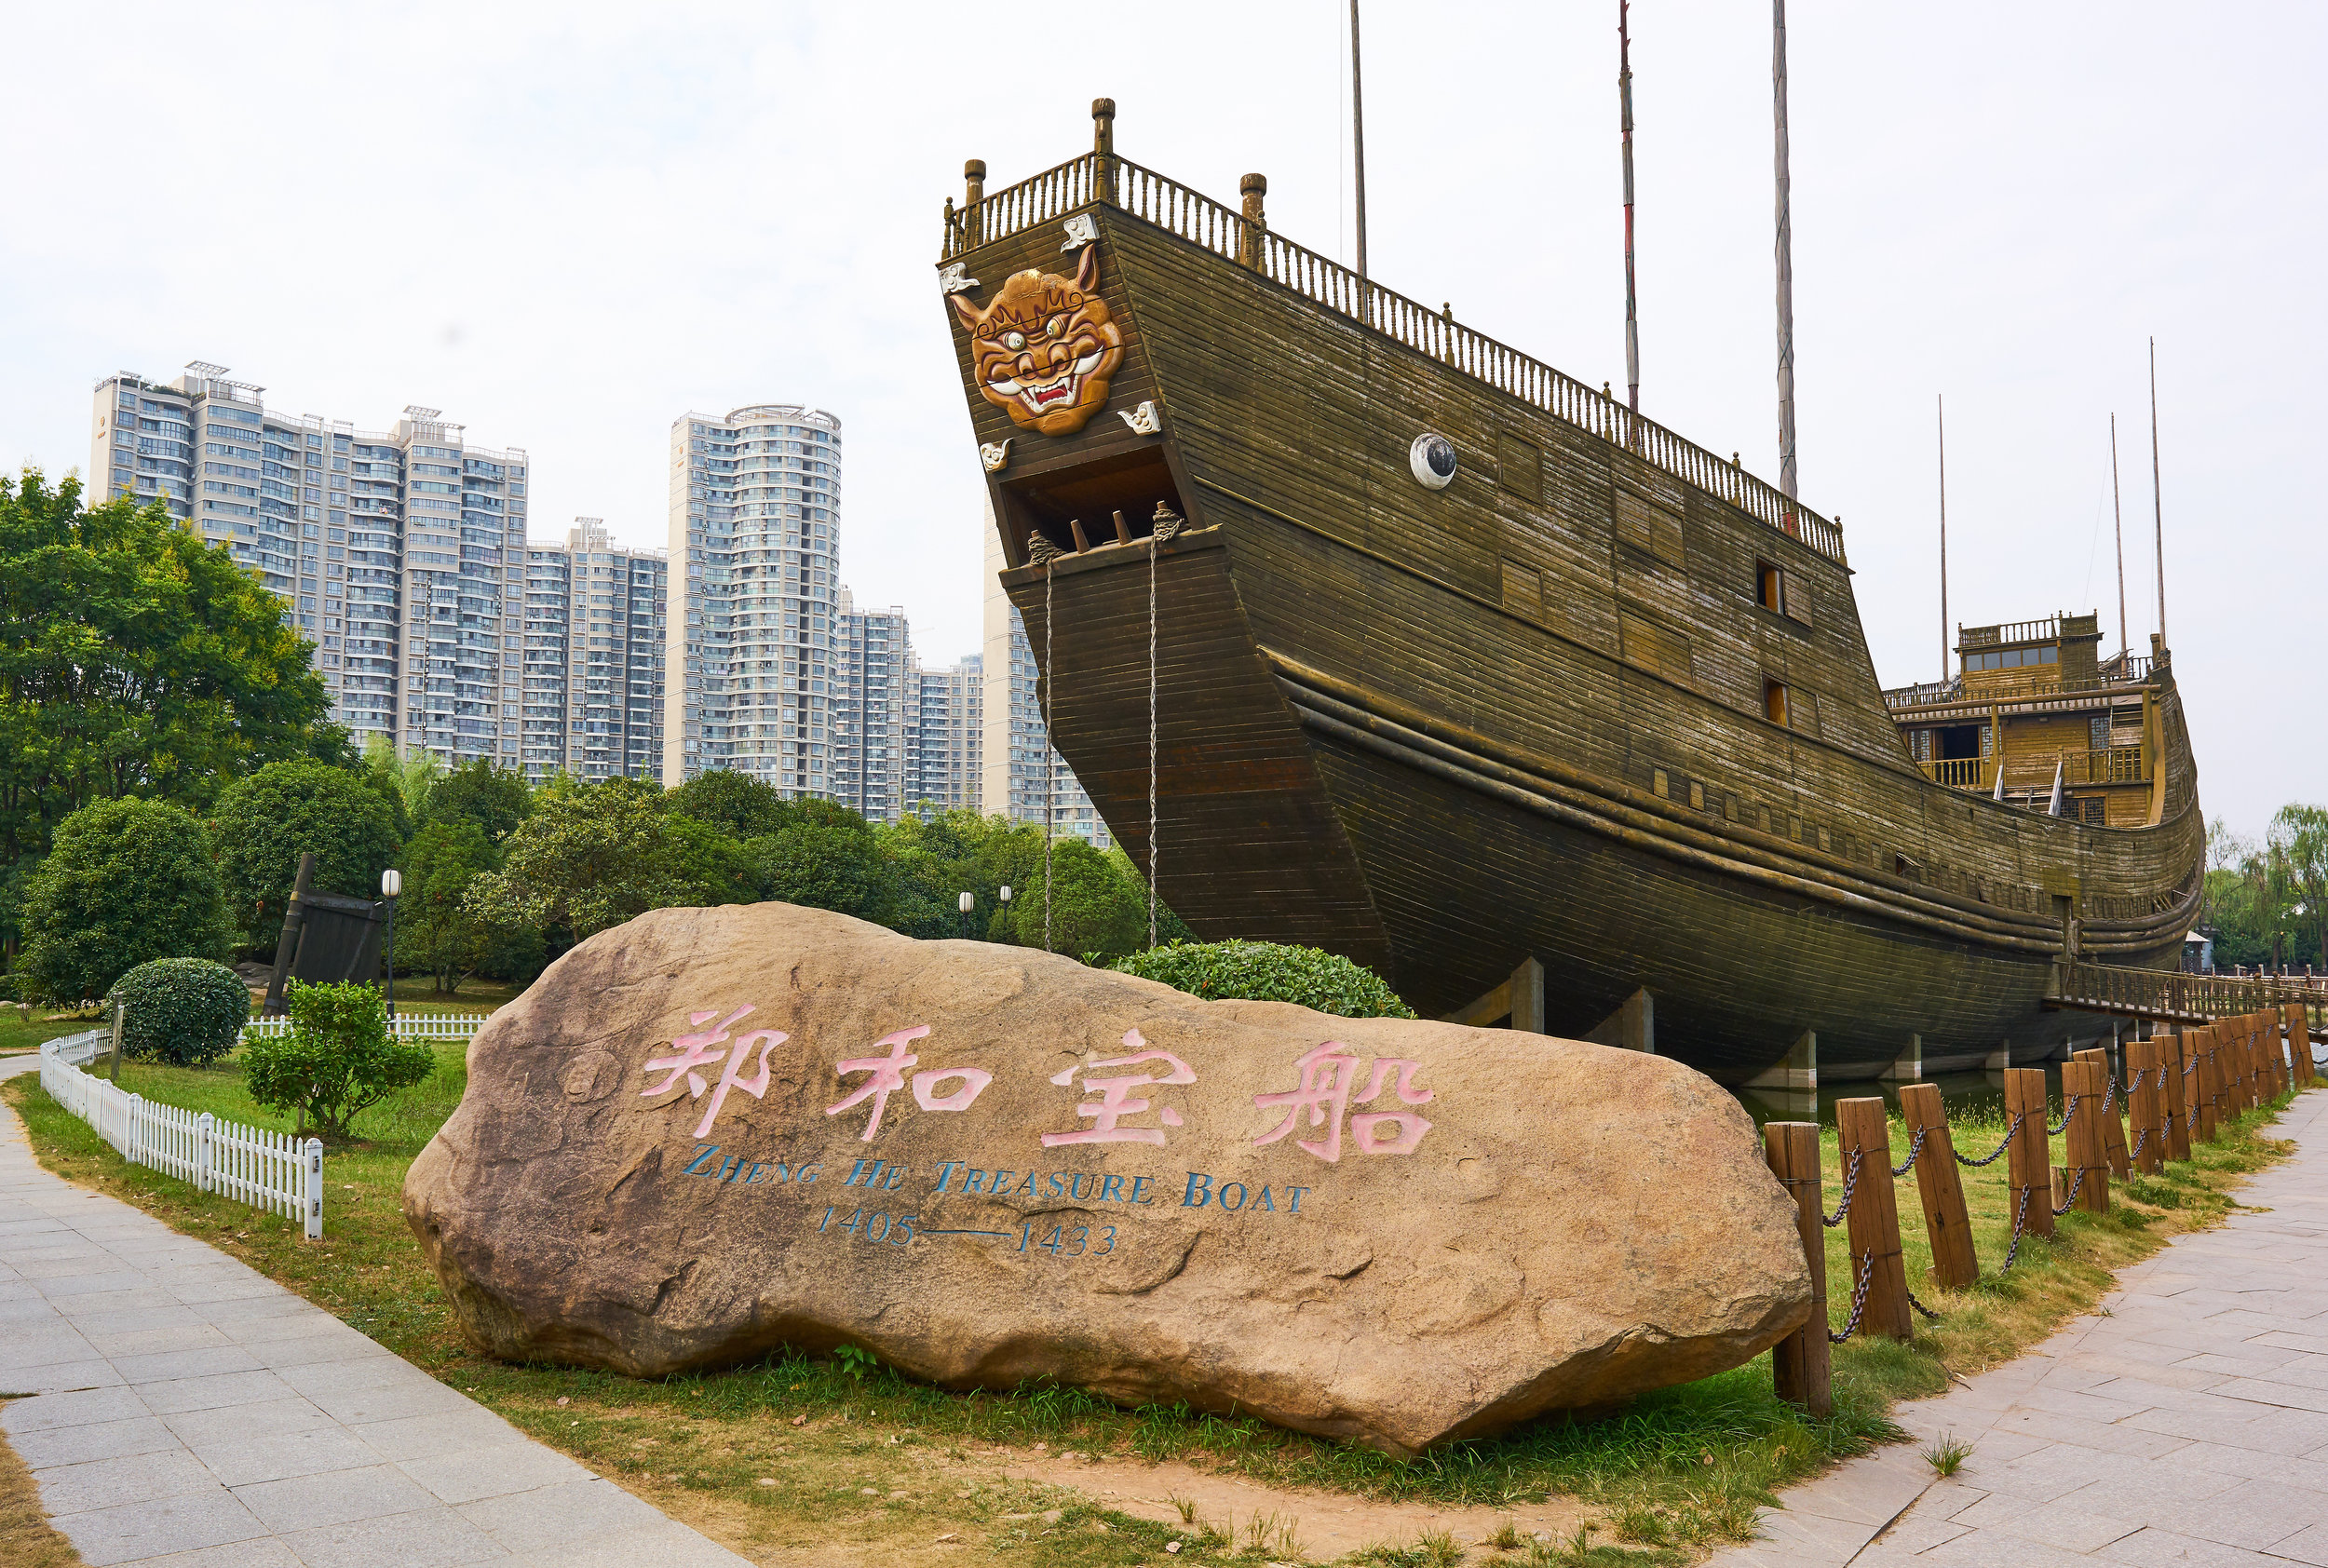 Zheng He nanjing boat.jpg